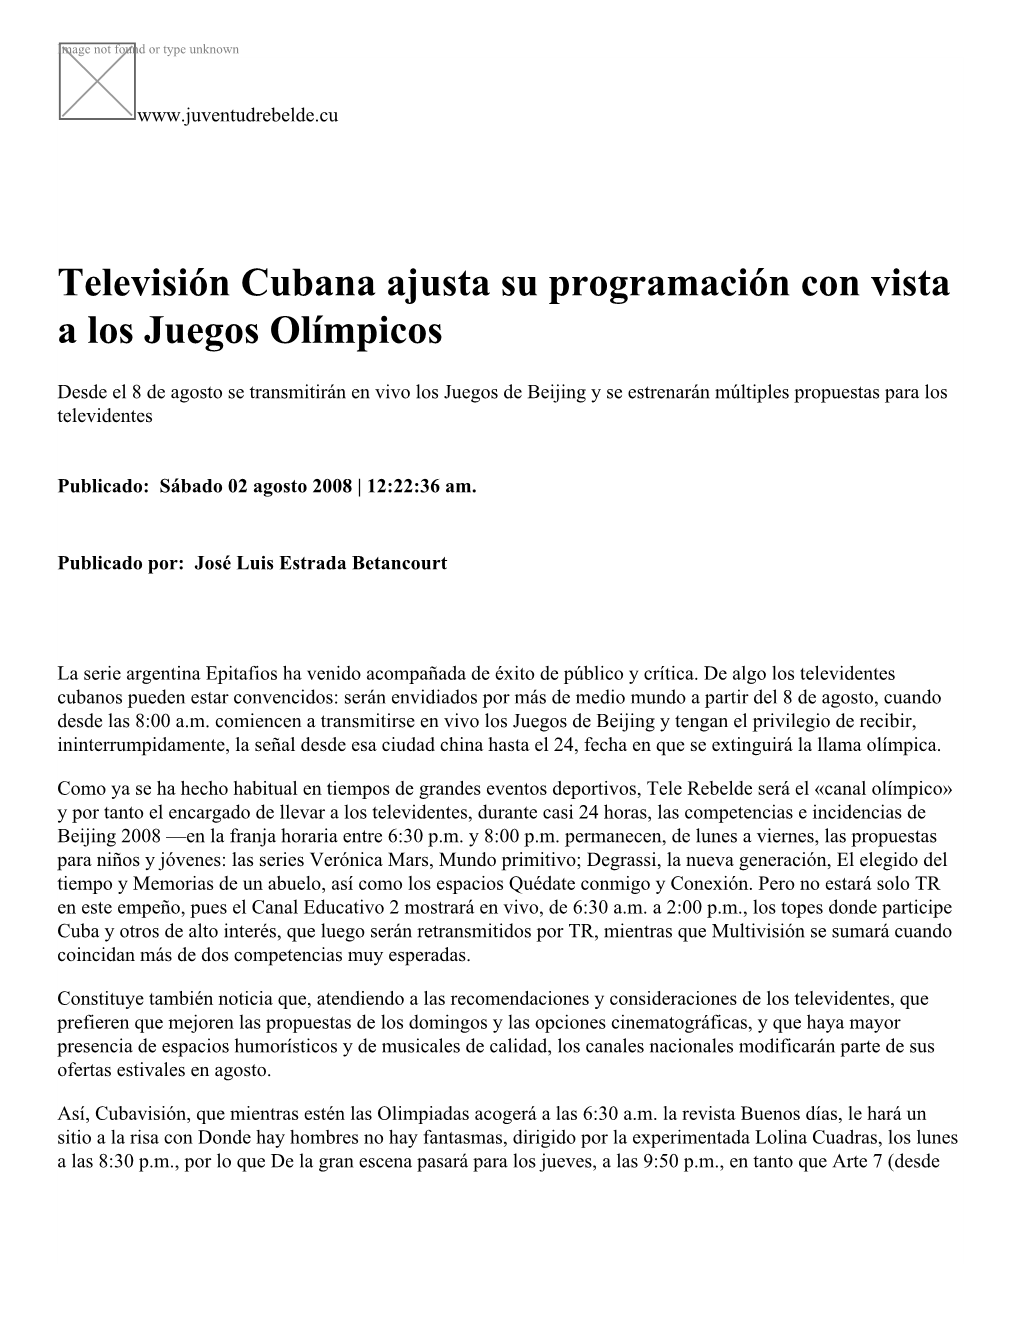 Televisión Cubana Ajusta Su Programación Con Vista a Los Juegos Olímpicos